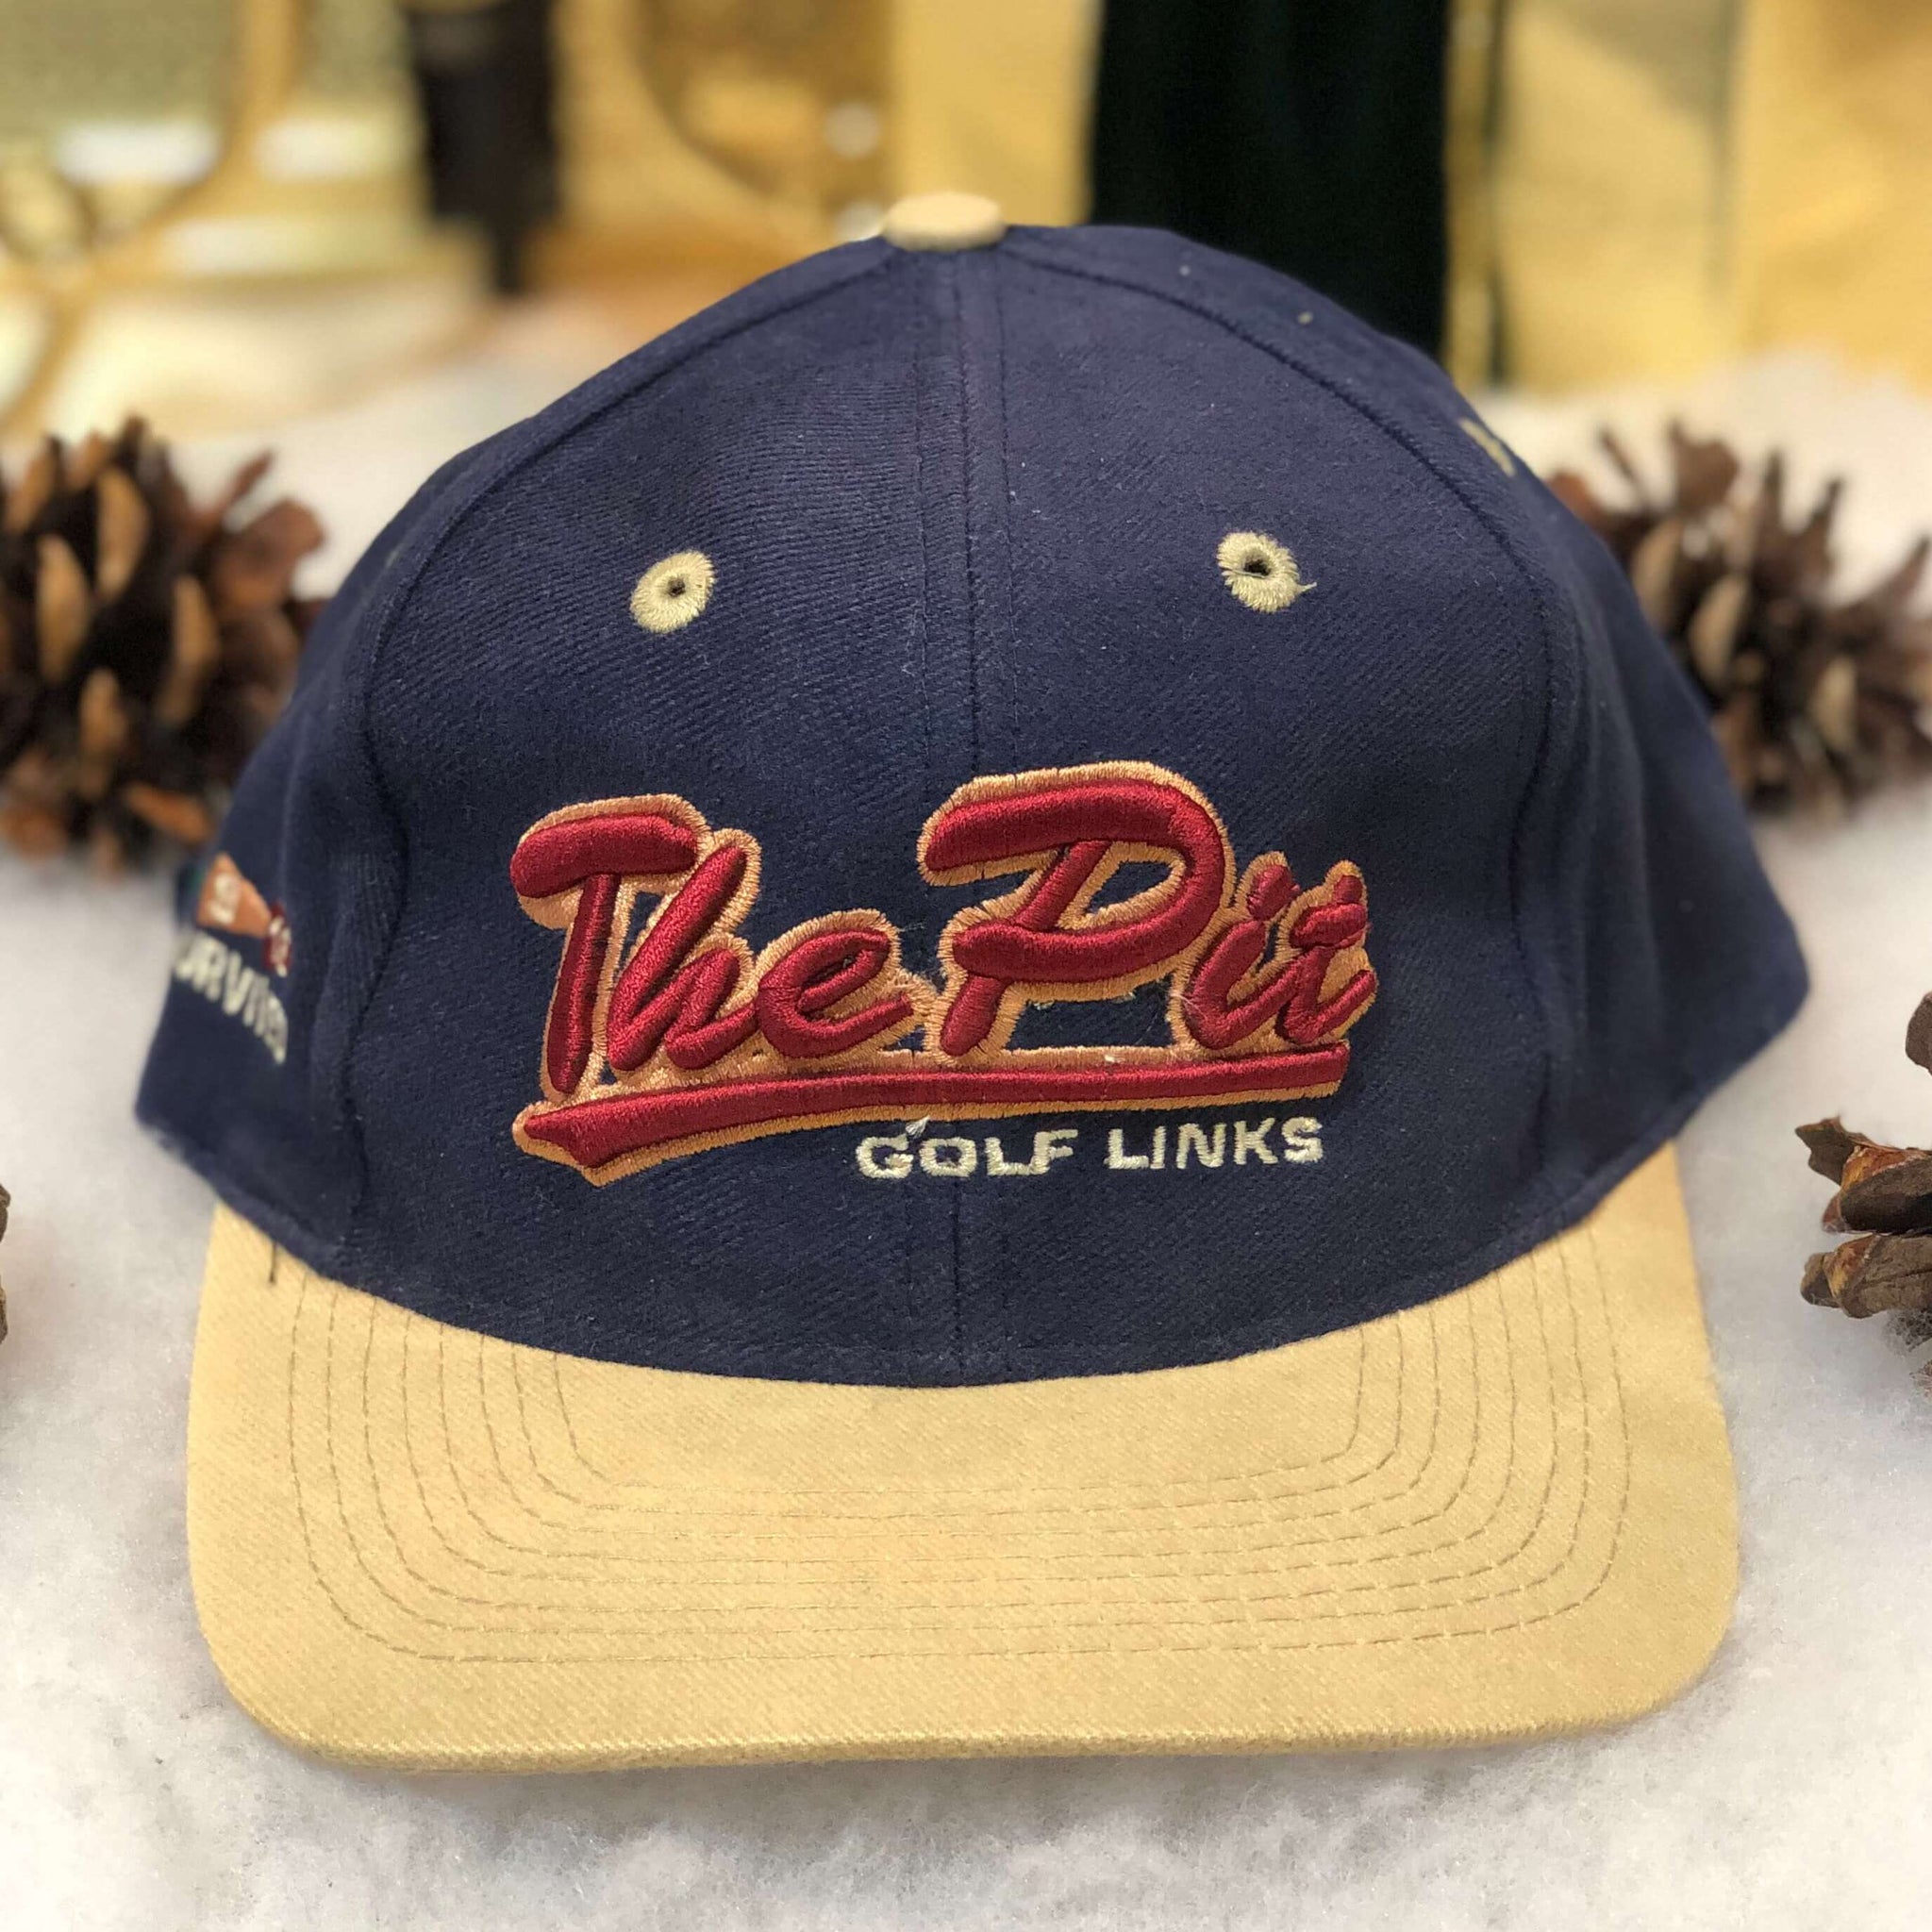 Vintage The Pit Golf Links "I Survived 18" Pinehurst North Carolina Strapback Hat